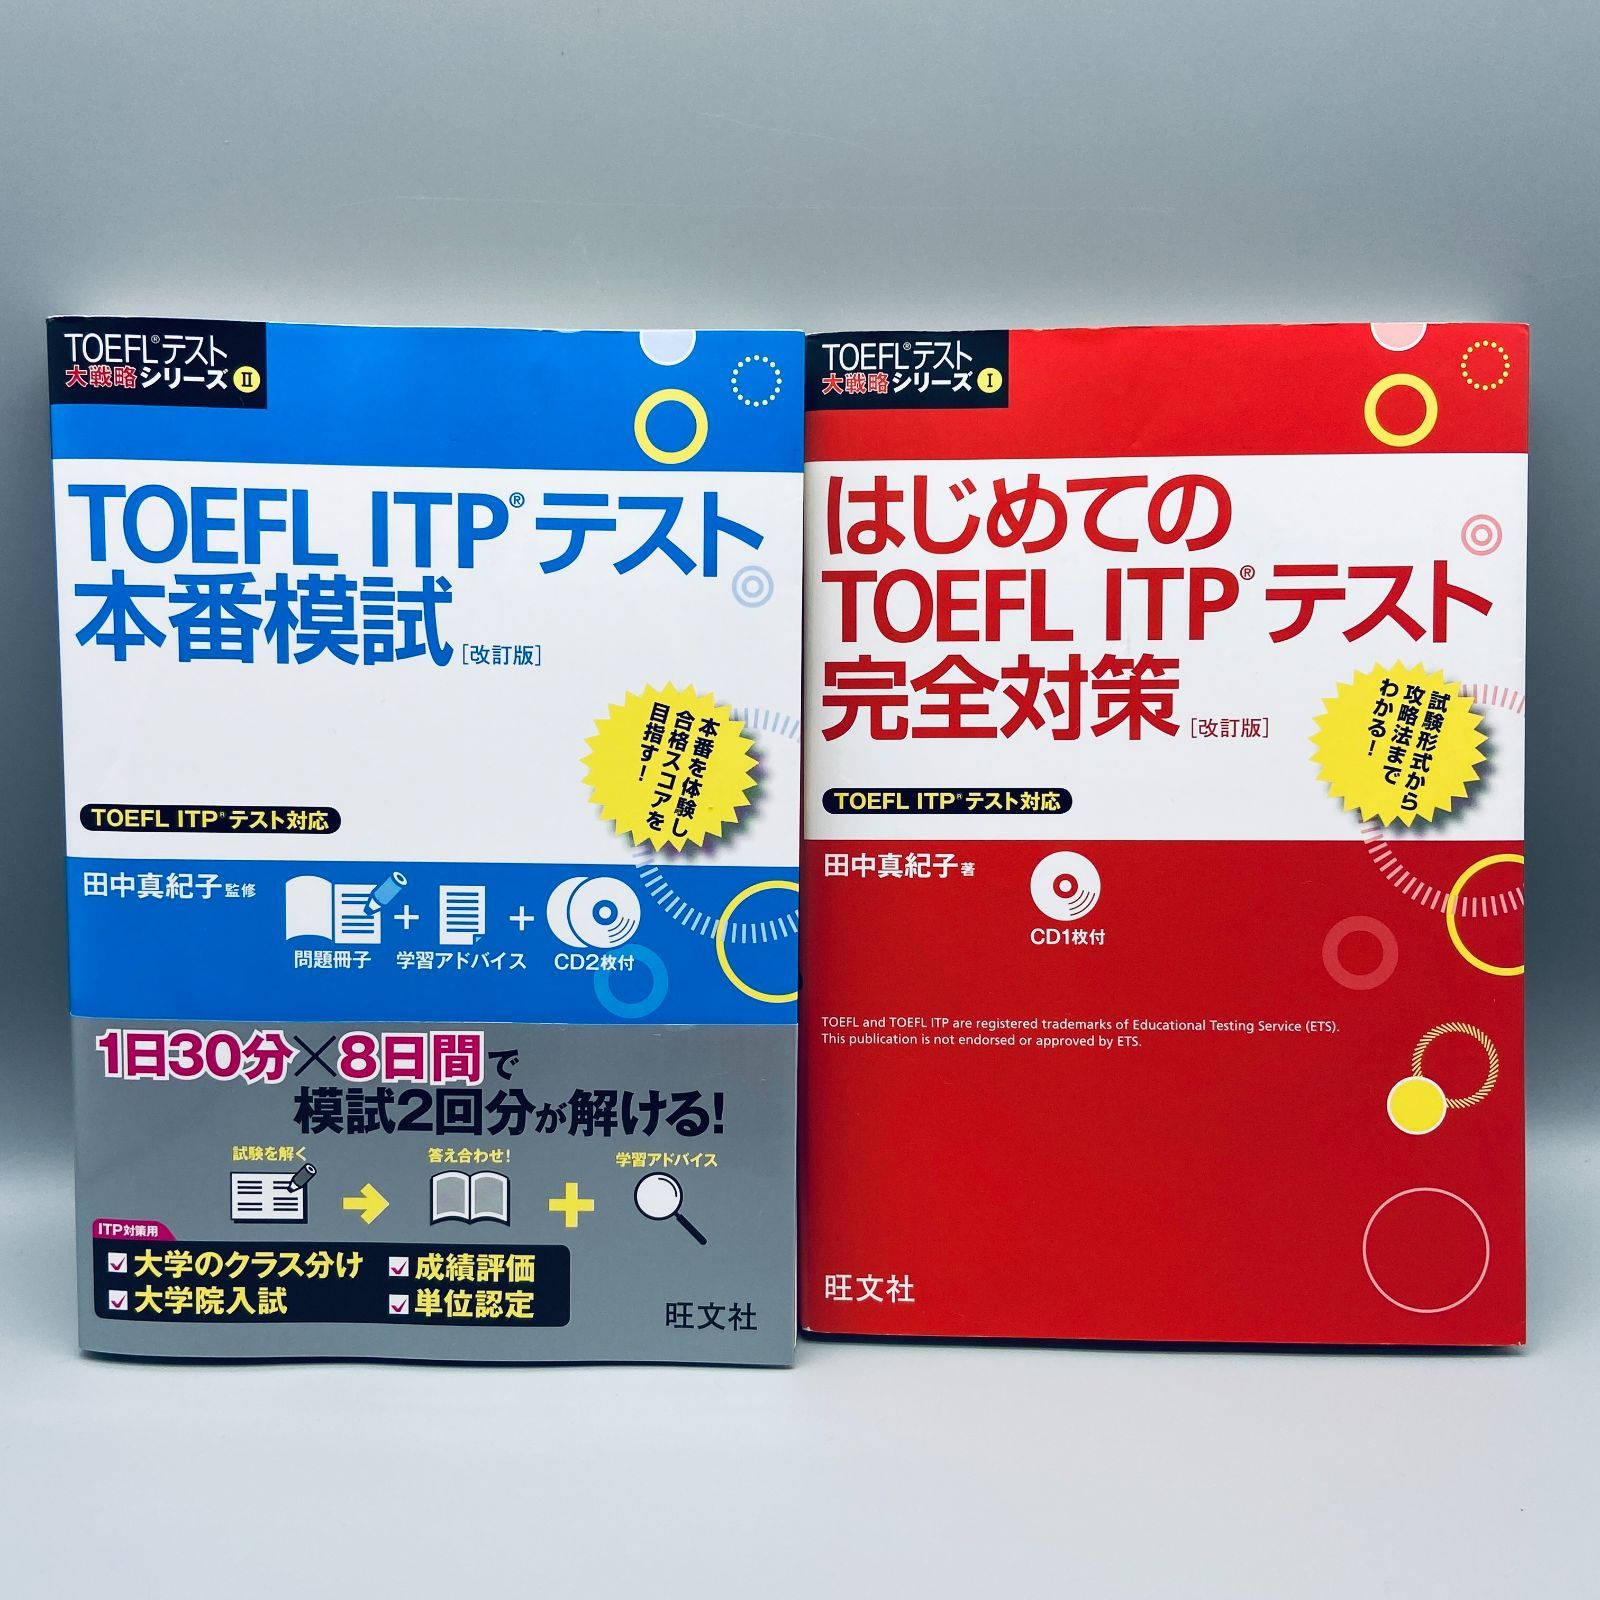 TOEFL ITP対策セット